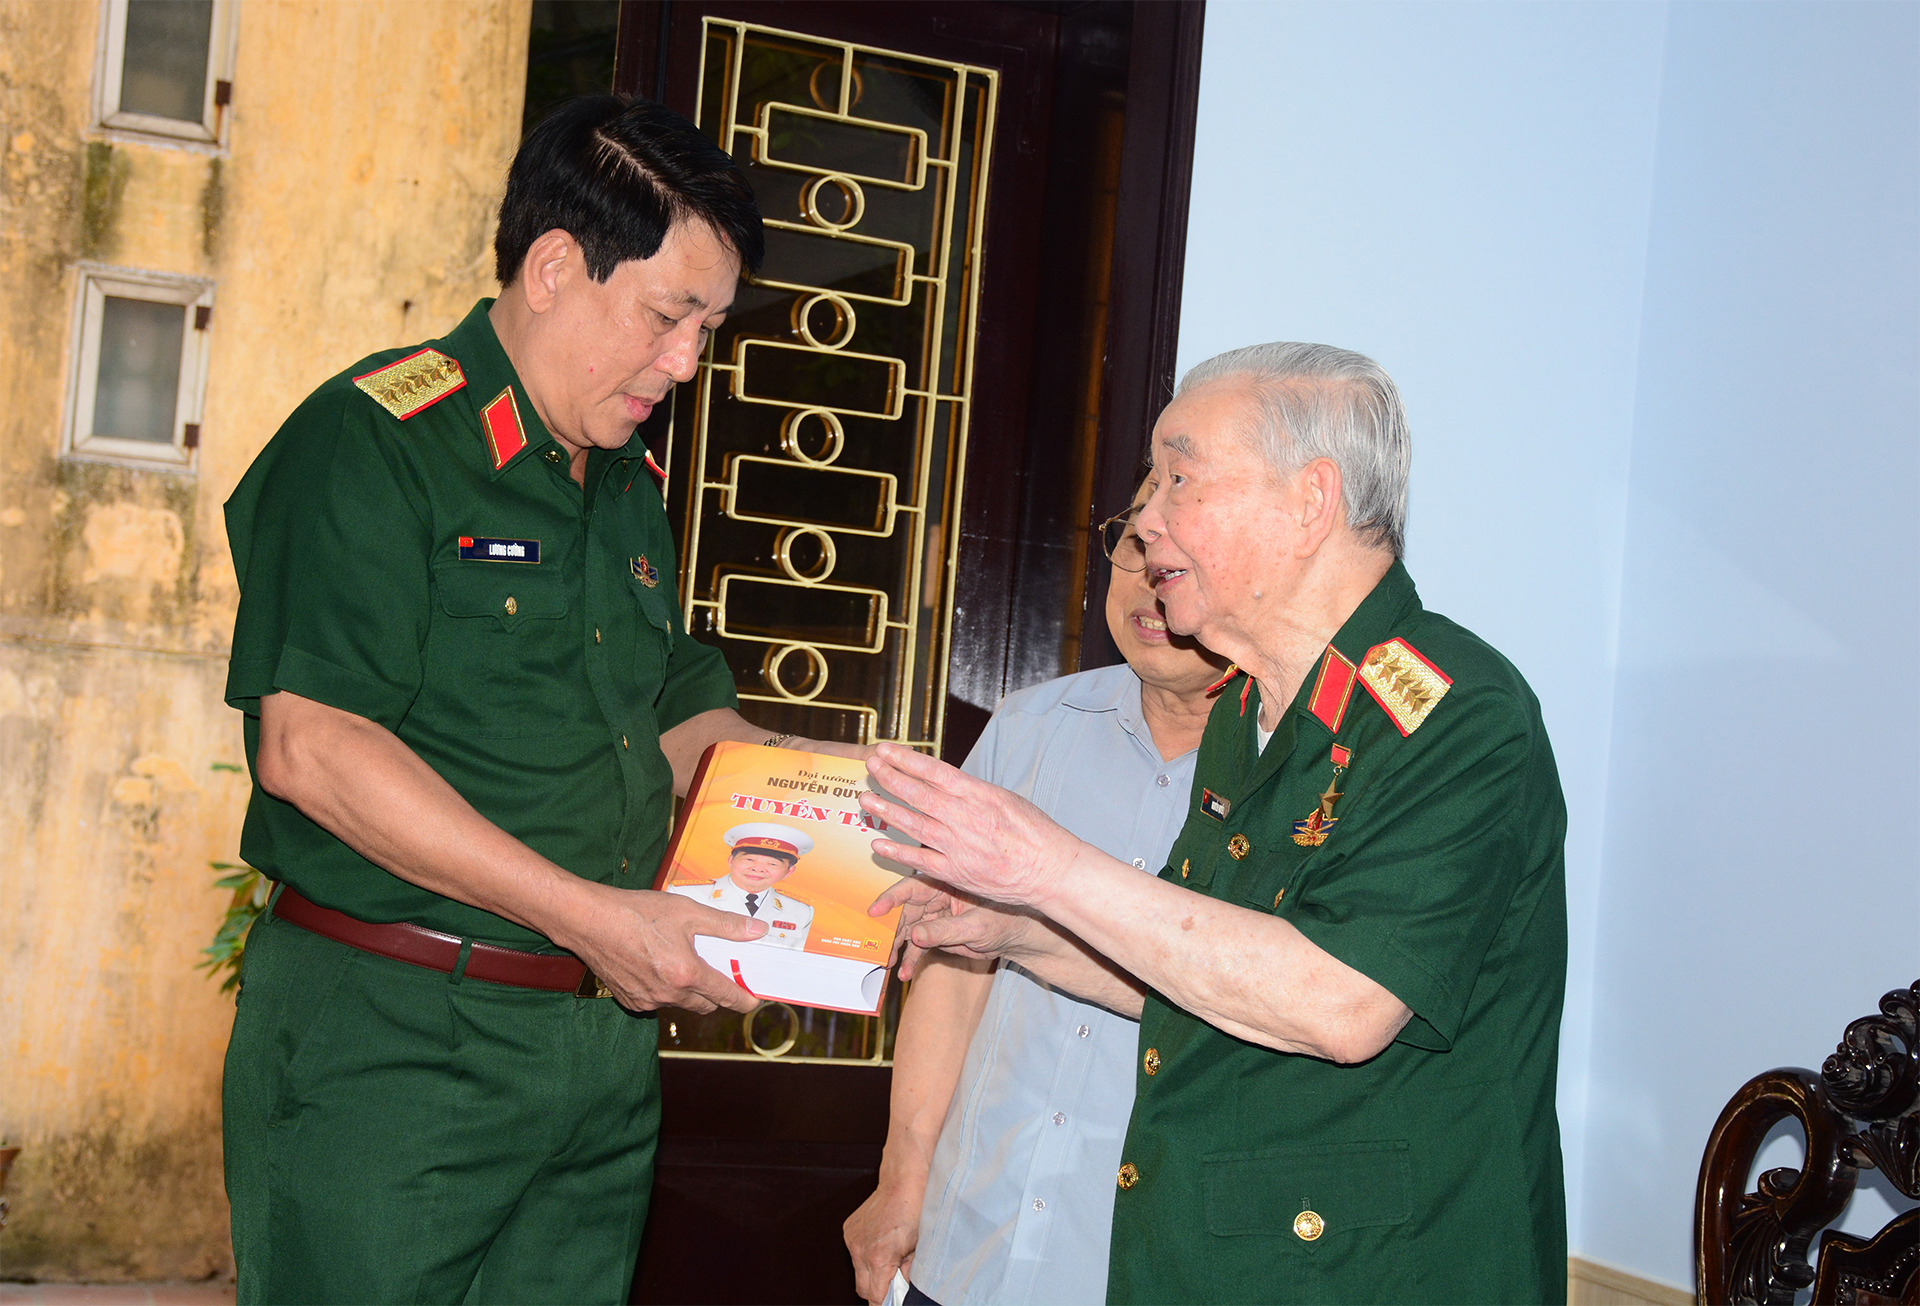 Đại tướng Nguyễn Quyết, một cuộc đời cách mạng trọn vẹn và trong sáng